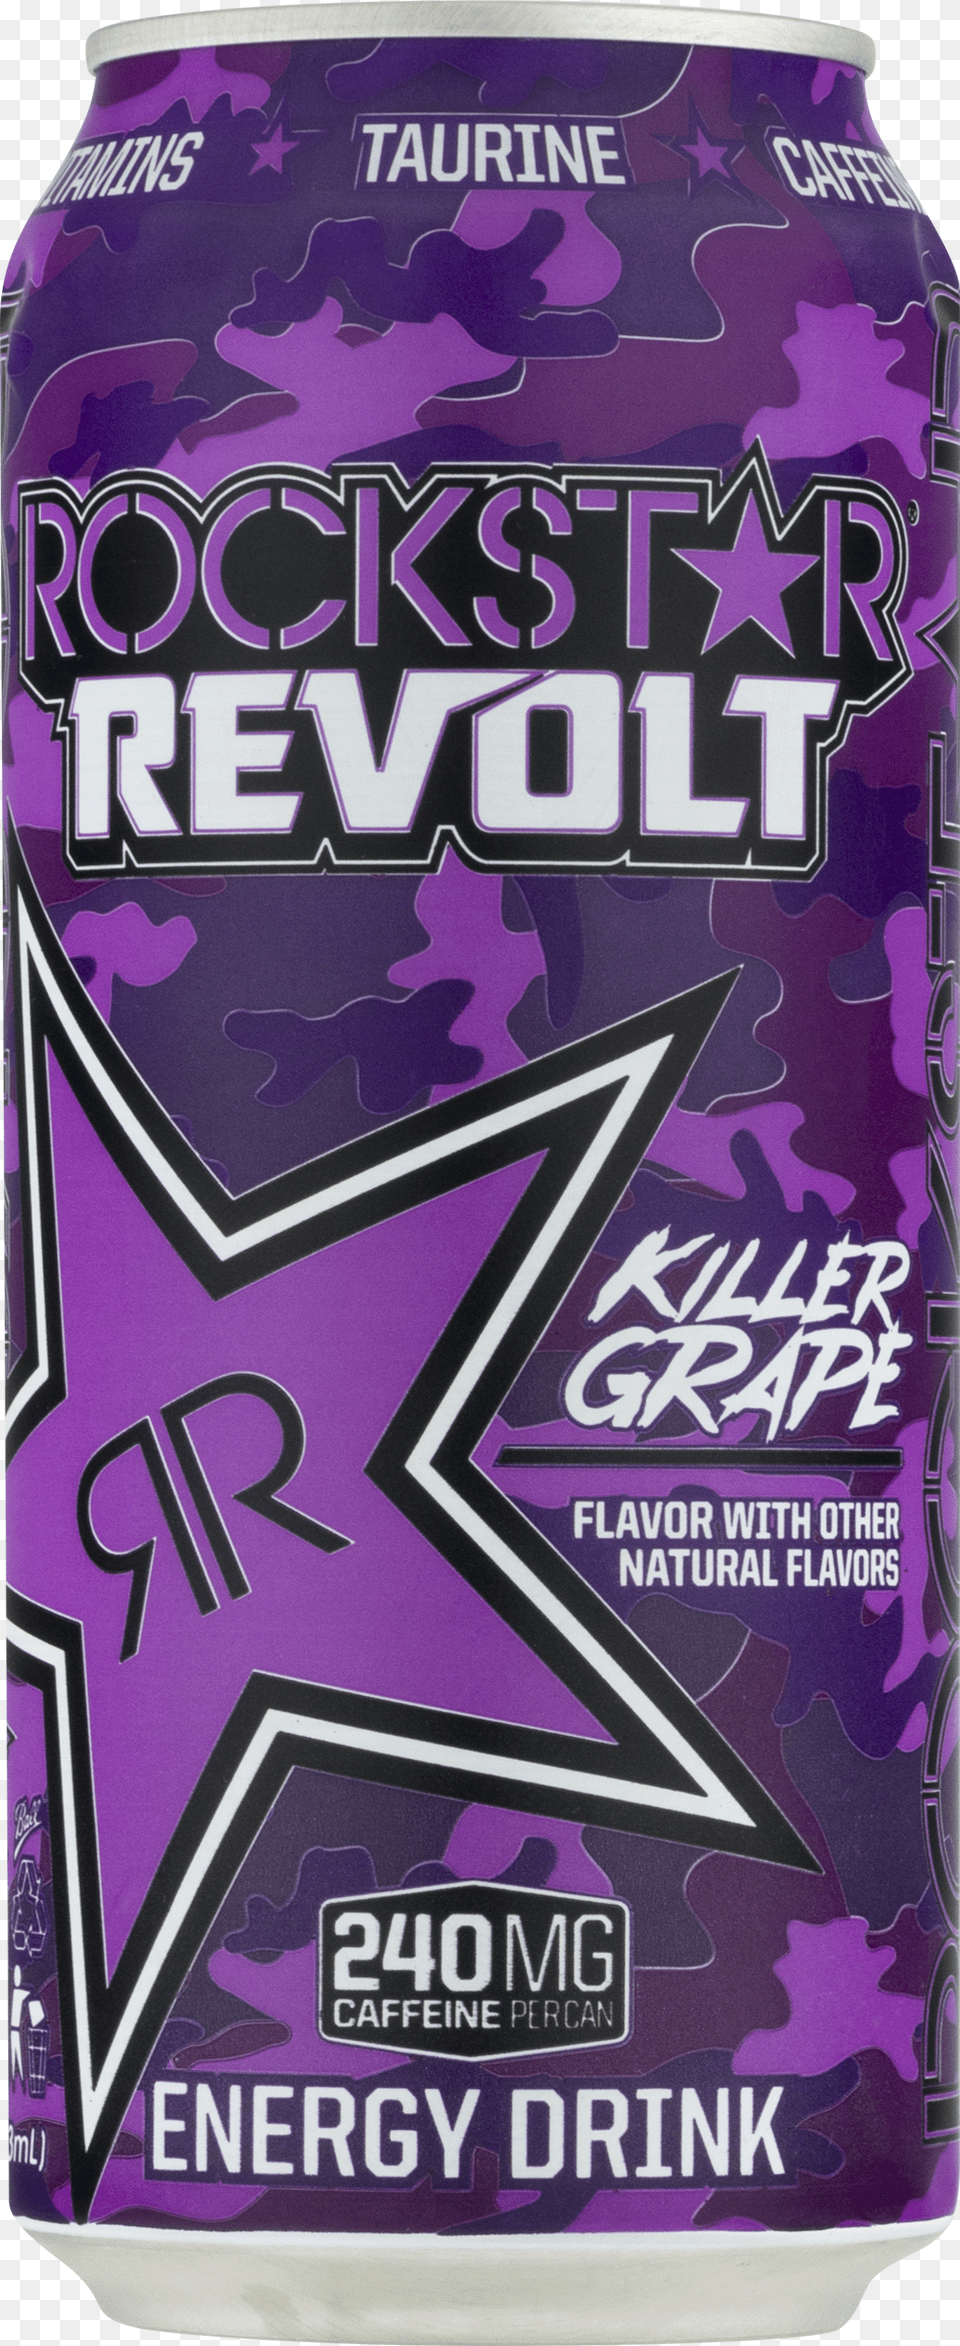 Rockstar Revolt Killer Grape, Can, Tin Png